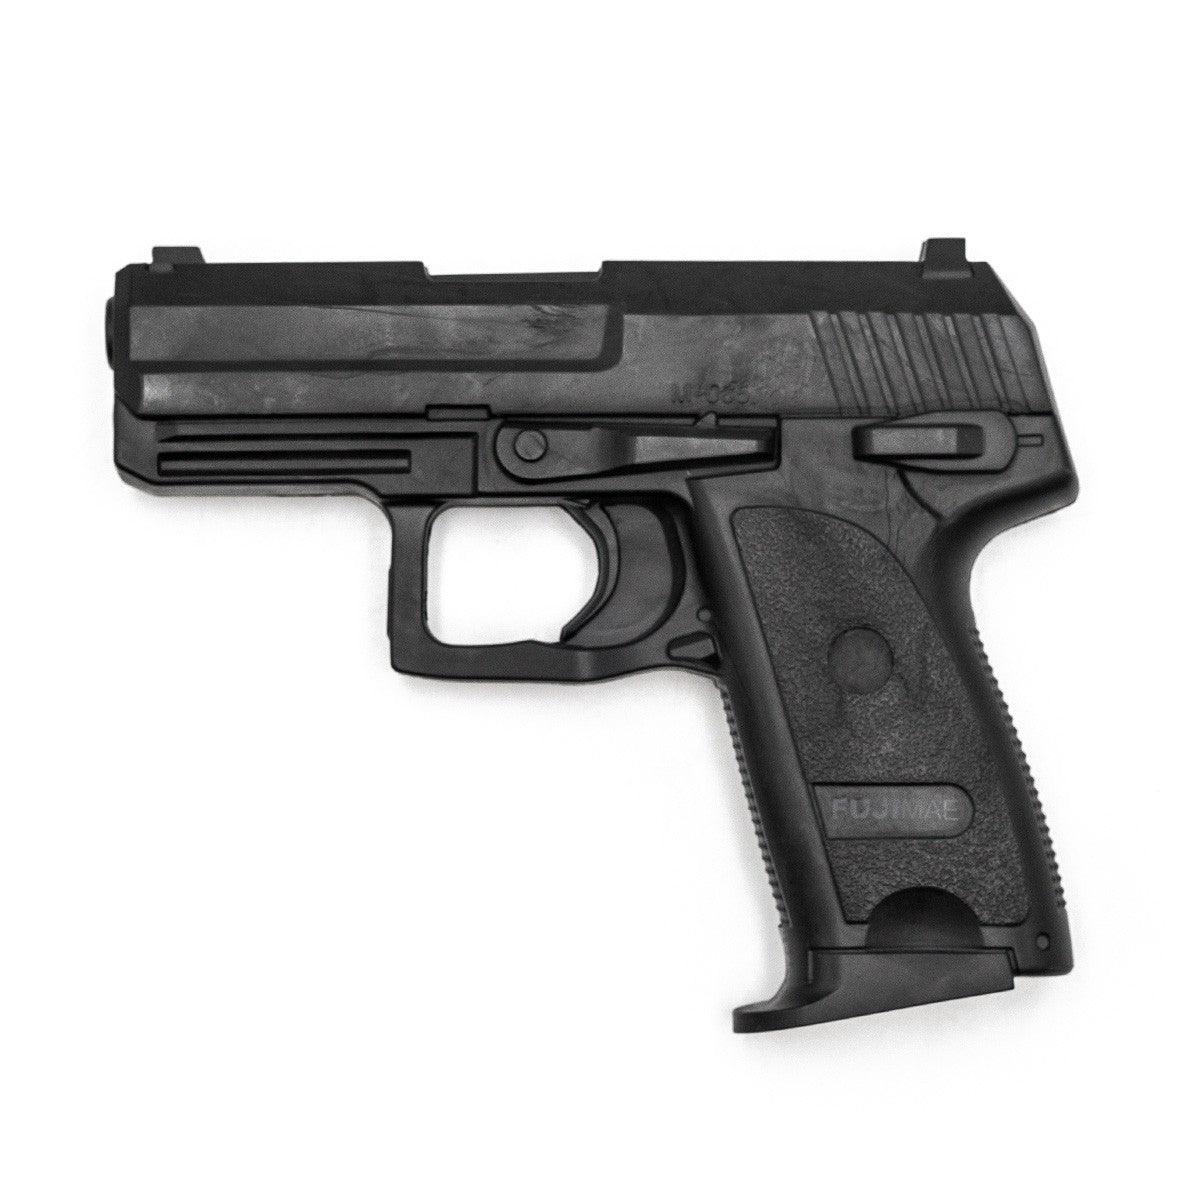 Pistolet d'entrainement Fuji Mae SD-H93C - Noir - Boutique des Arts Martiaux